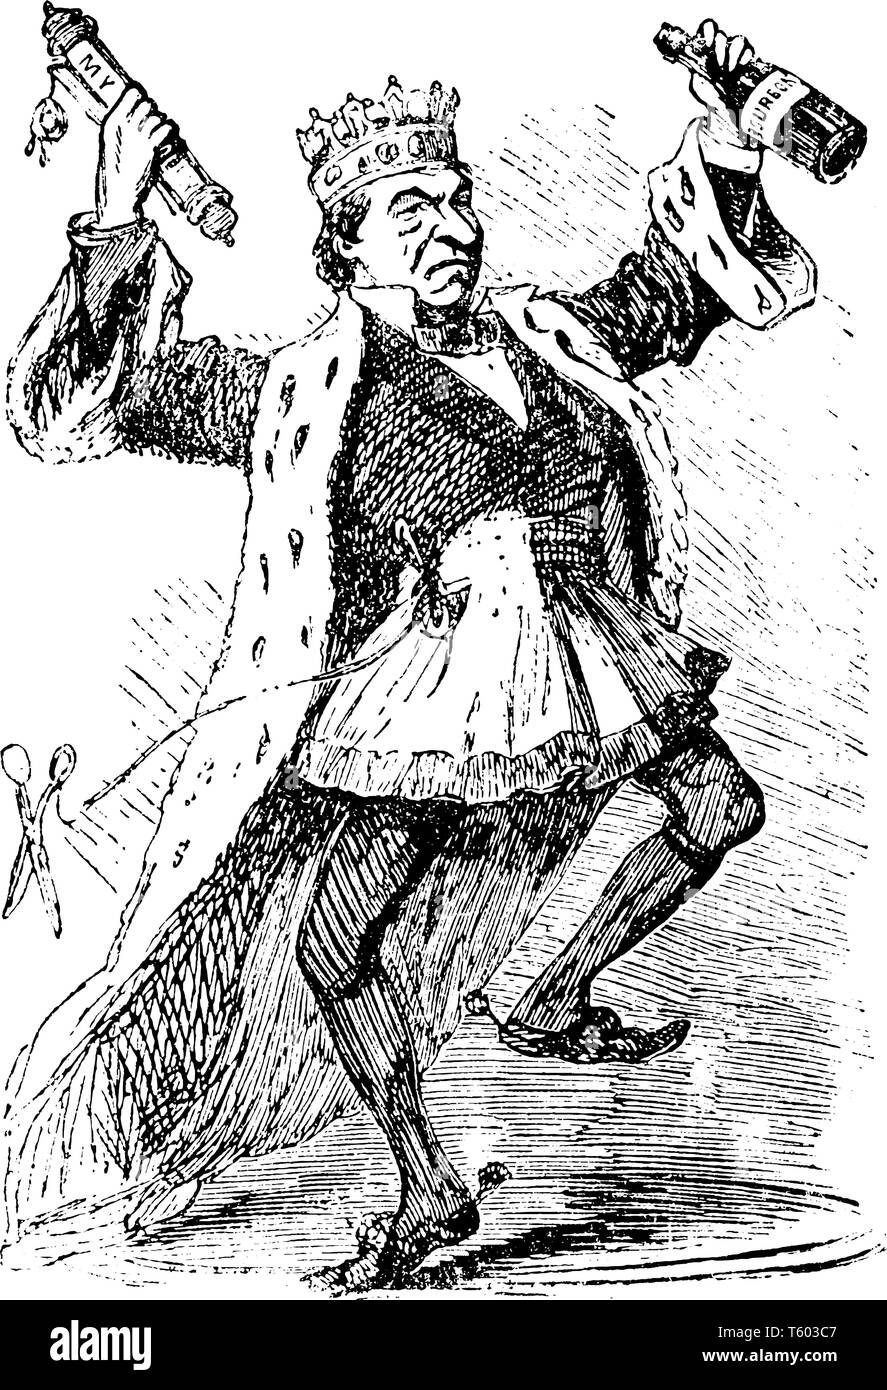 Un uomo con la corona sul capo azienda scorrimento della carta in una mano, vintage disegno della linea di incisione o illustrazione Illustrazione Vettoriale